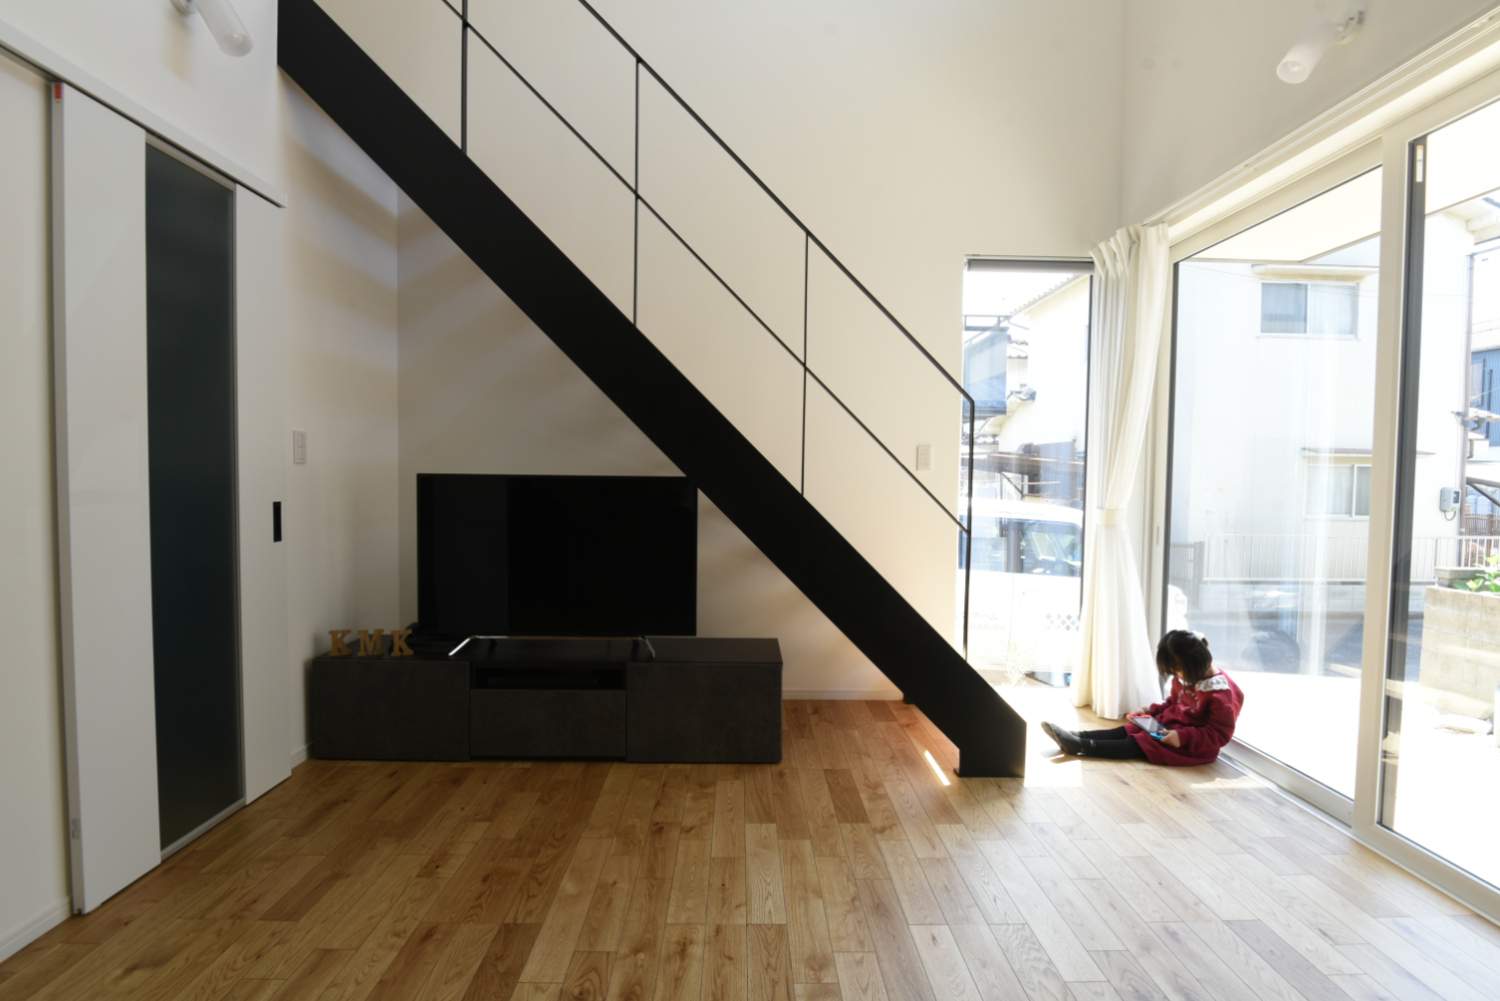 キッチンと階段の映えるコンパクトな家